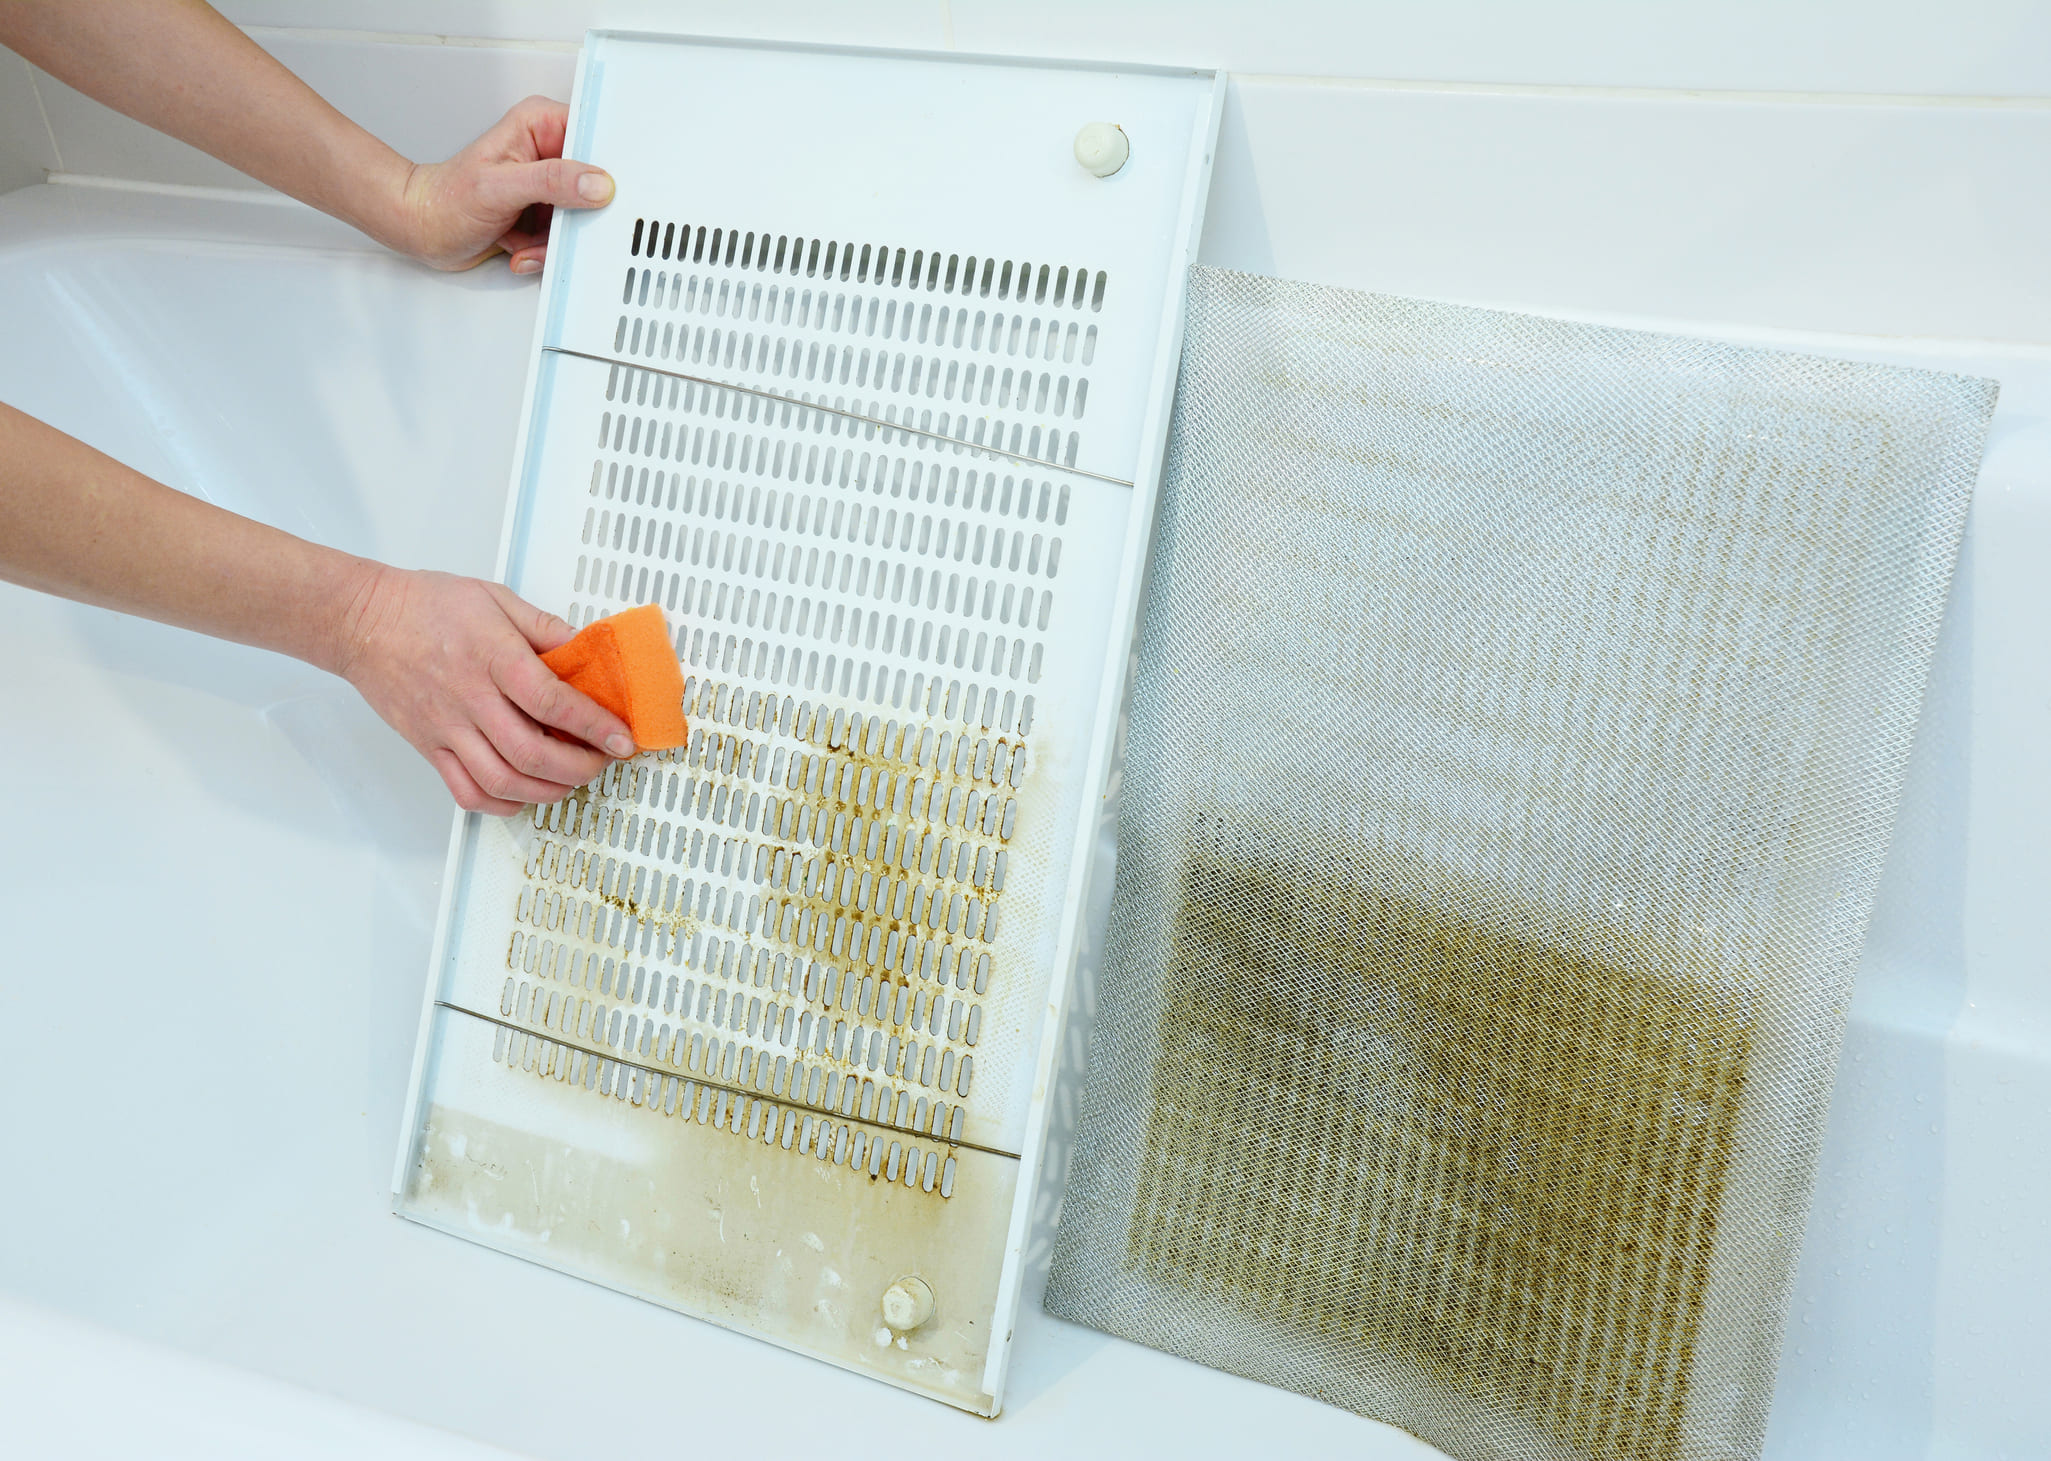 Una persona limpia los filtros de la campana extractora con una esponja en la bañera.